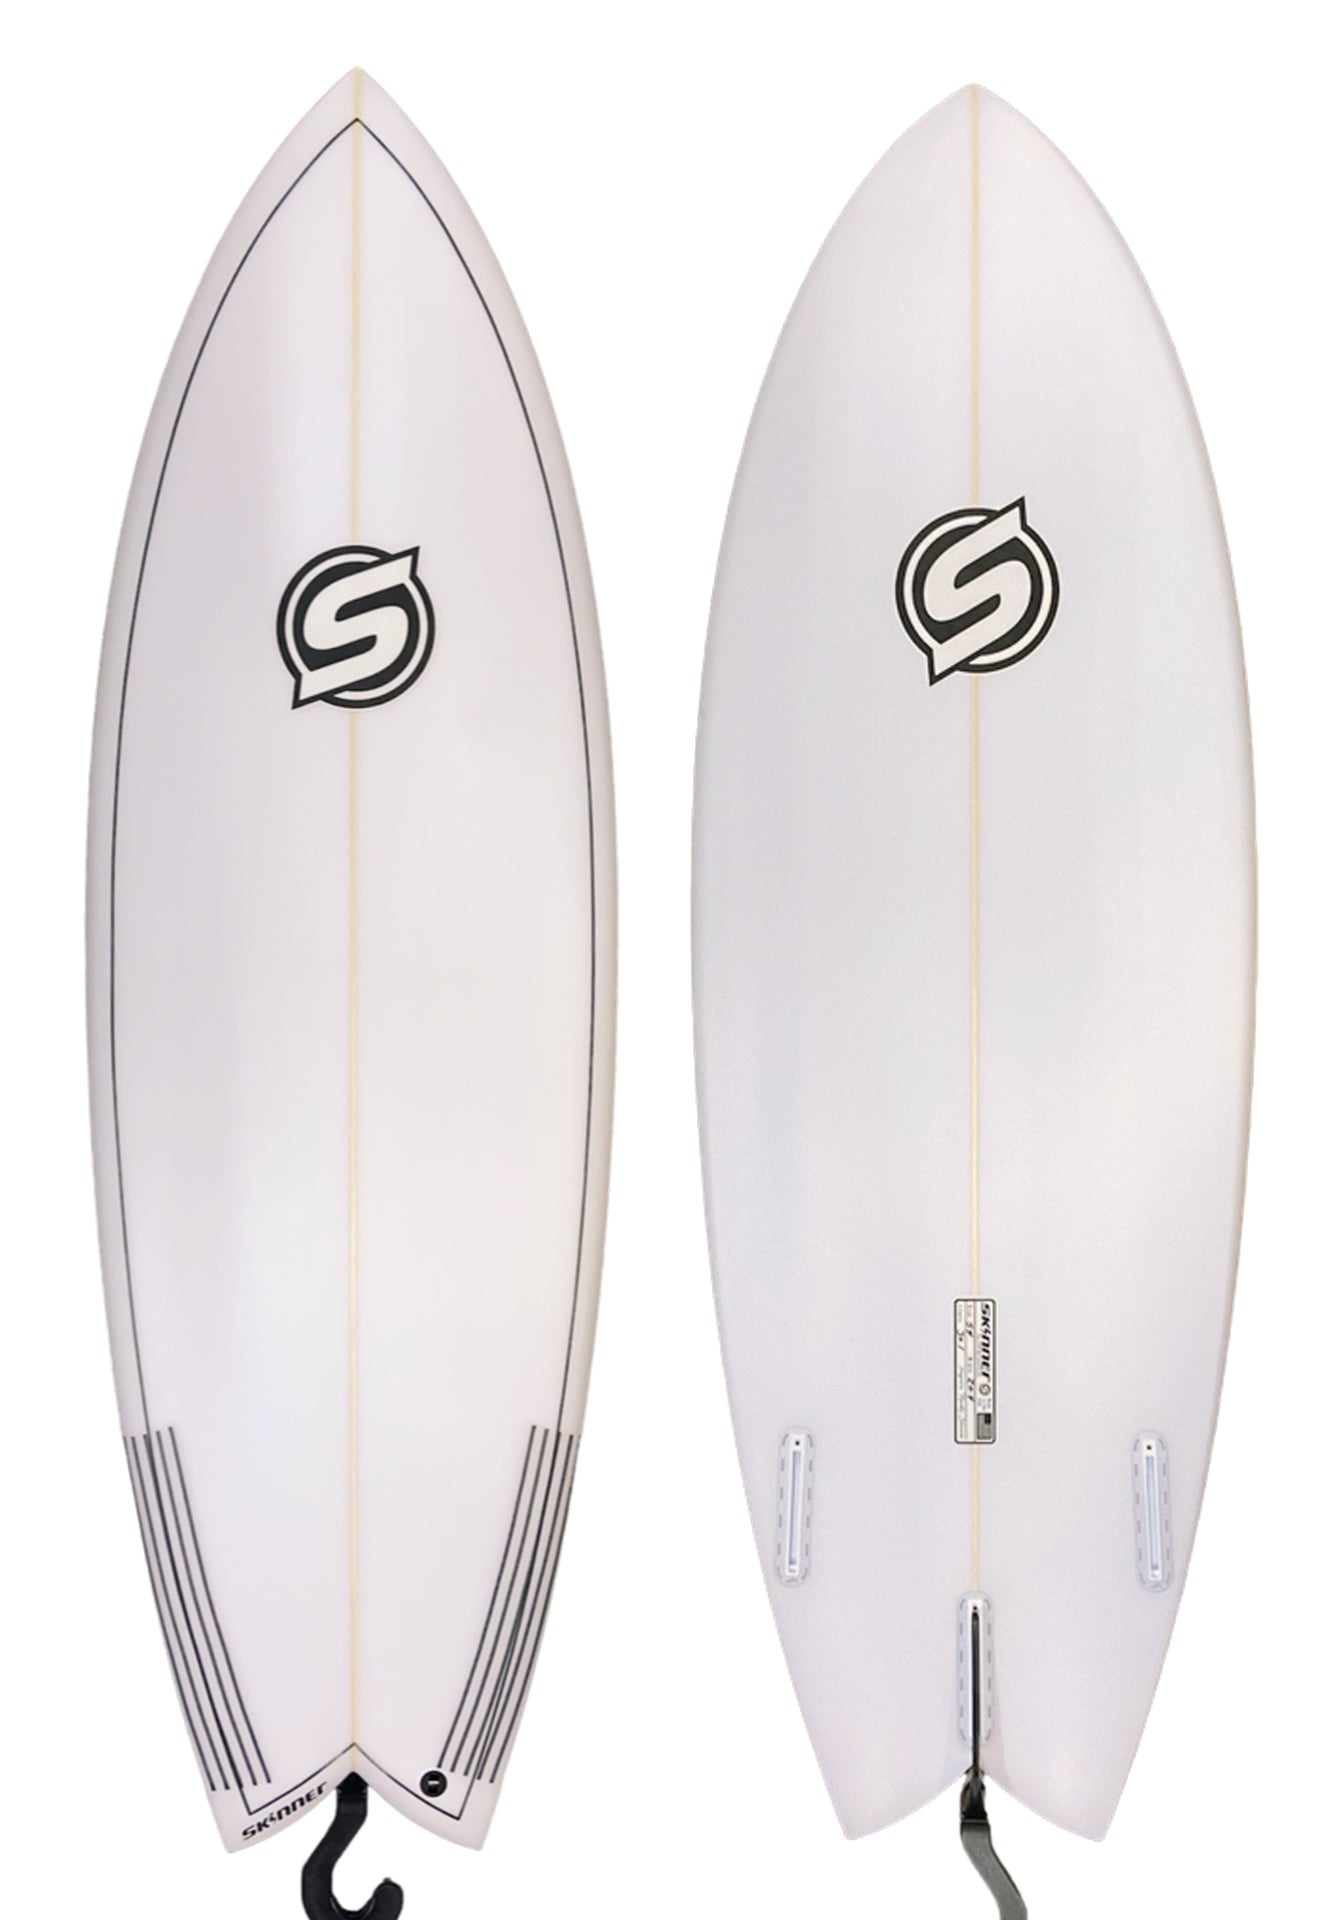 Skinner Surfboards 5'4" x 20.4 x 2.45 x 30.1L Twin + Fish Surfboard